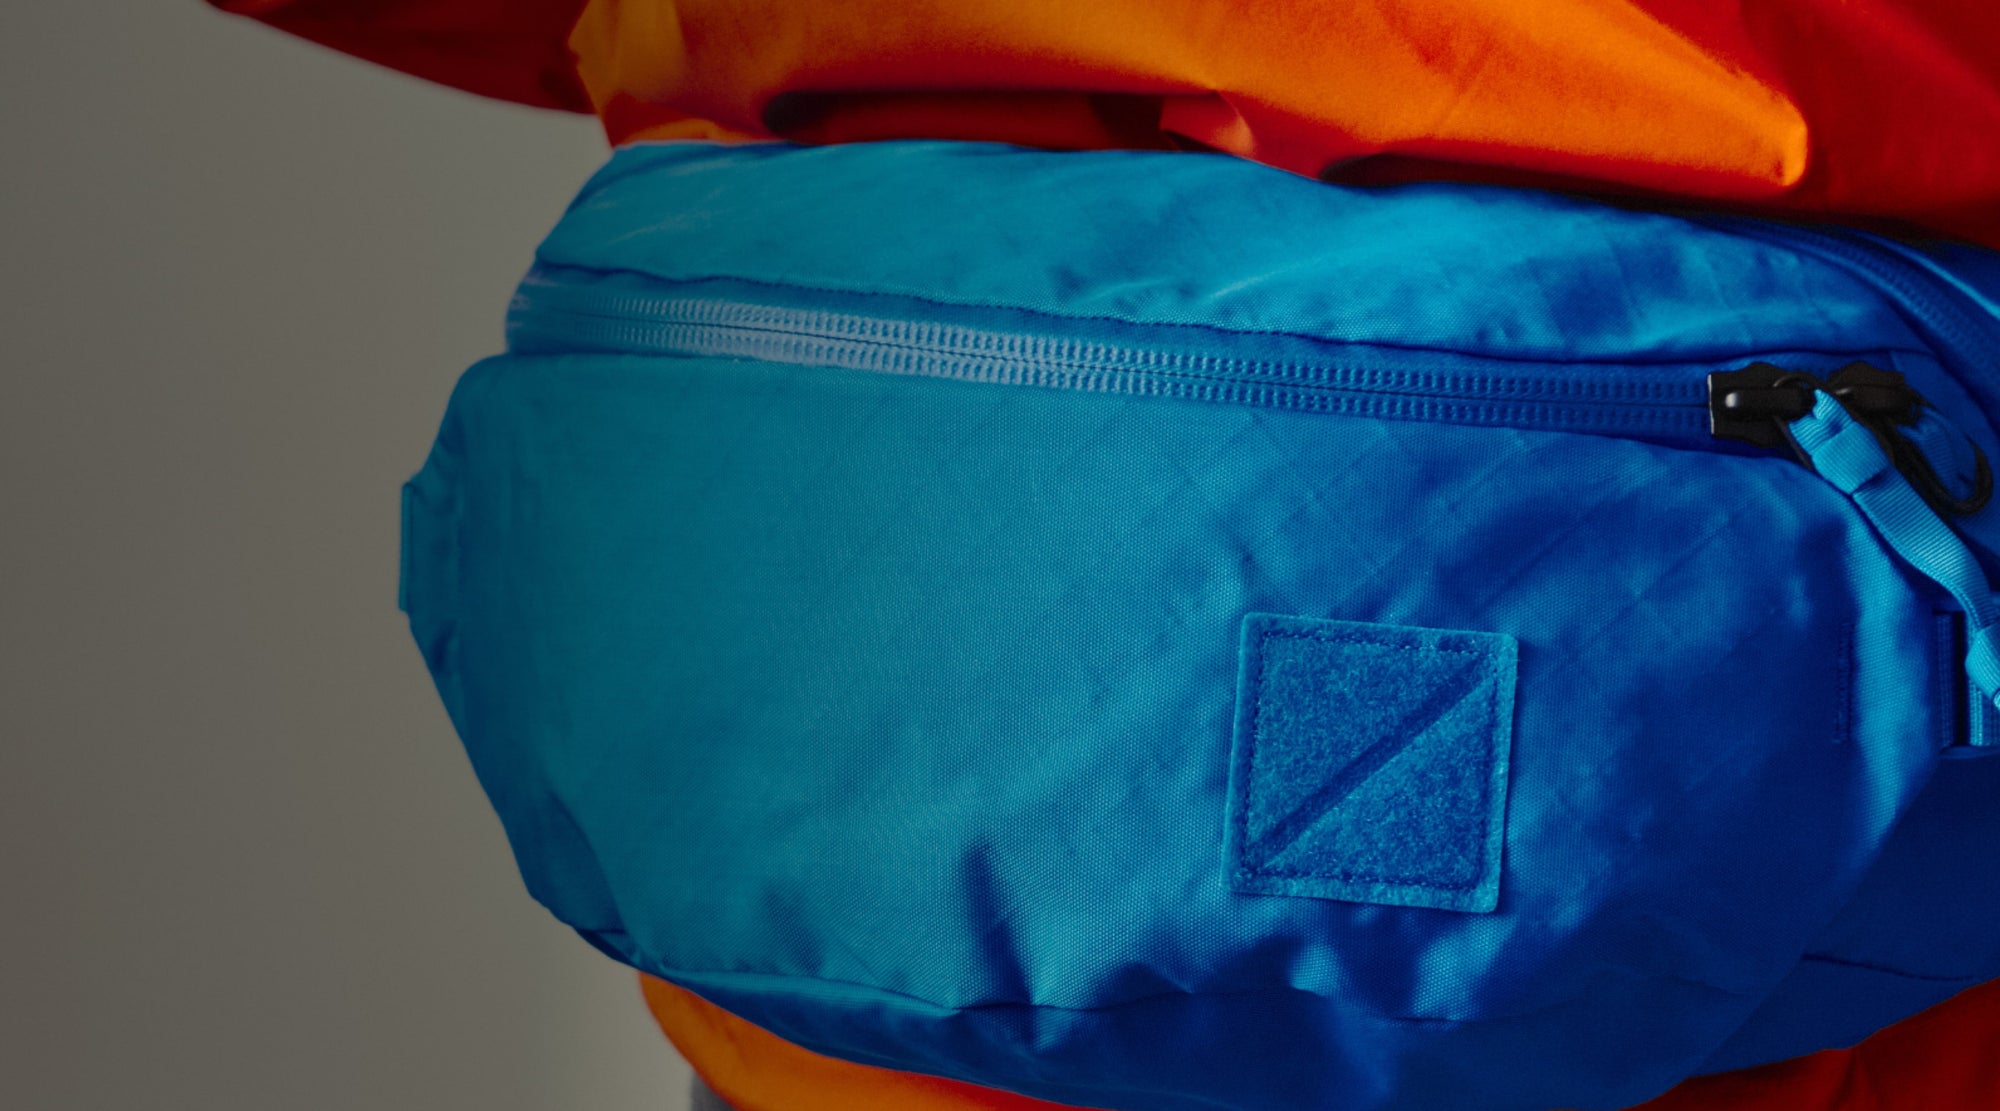 MOUNTAIN HIP PACK 3.5L in Ecopak Bright Blue - pu coated zippers